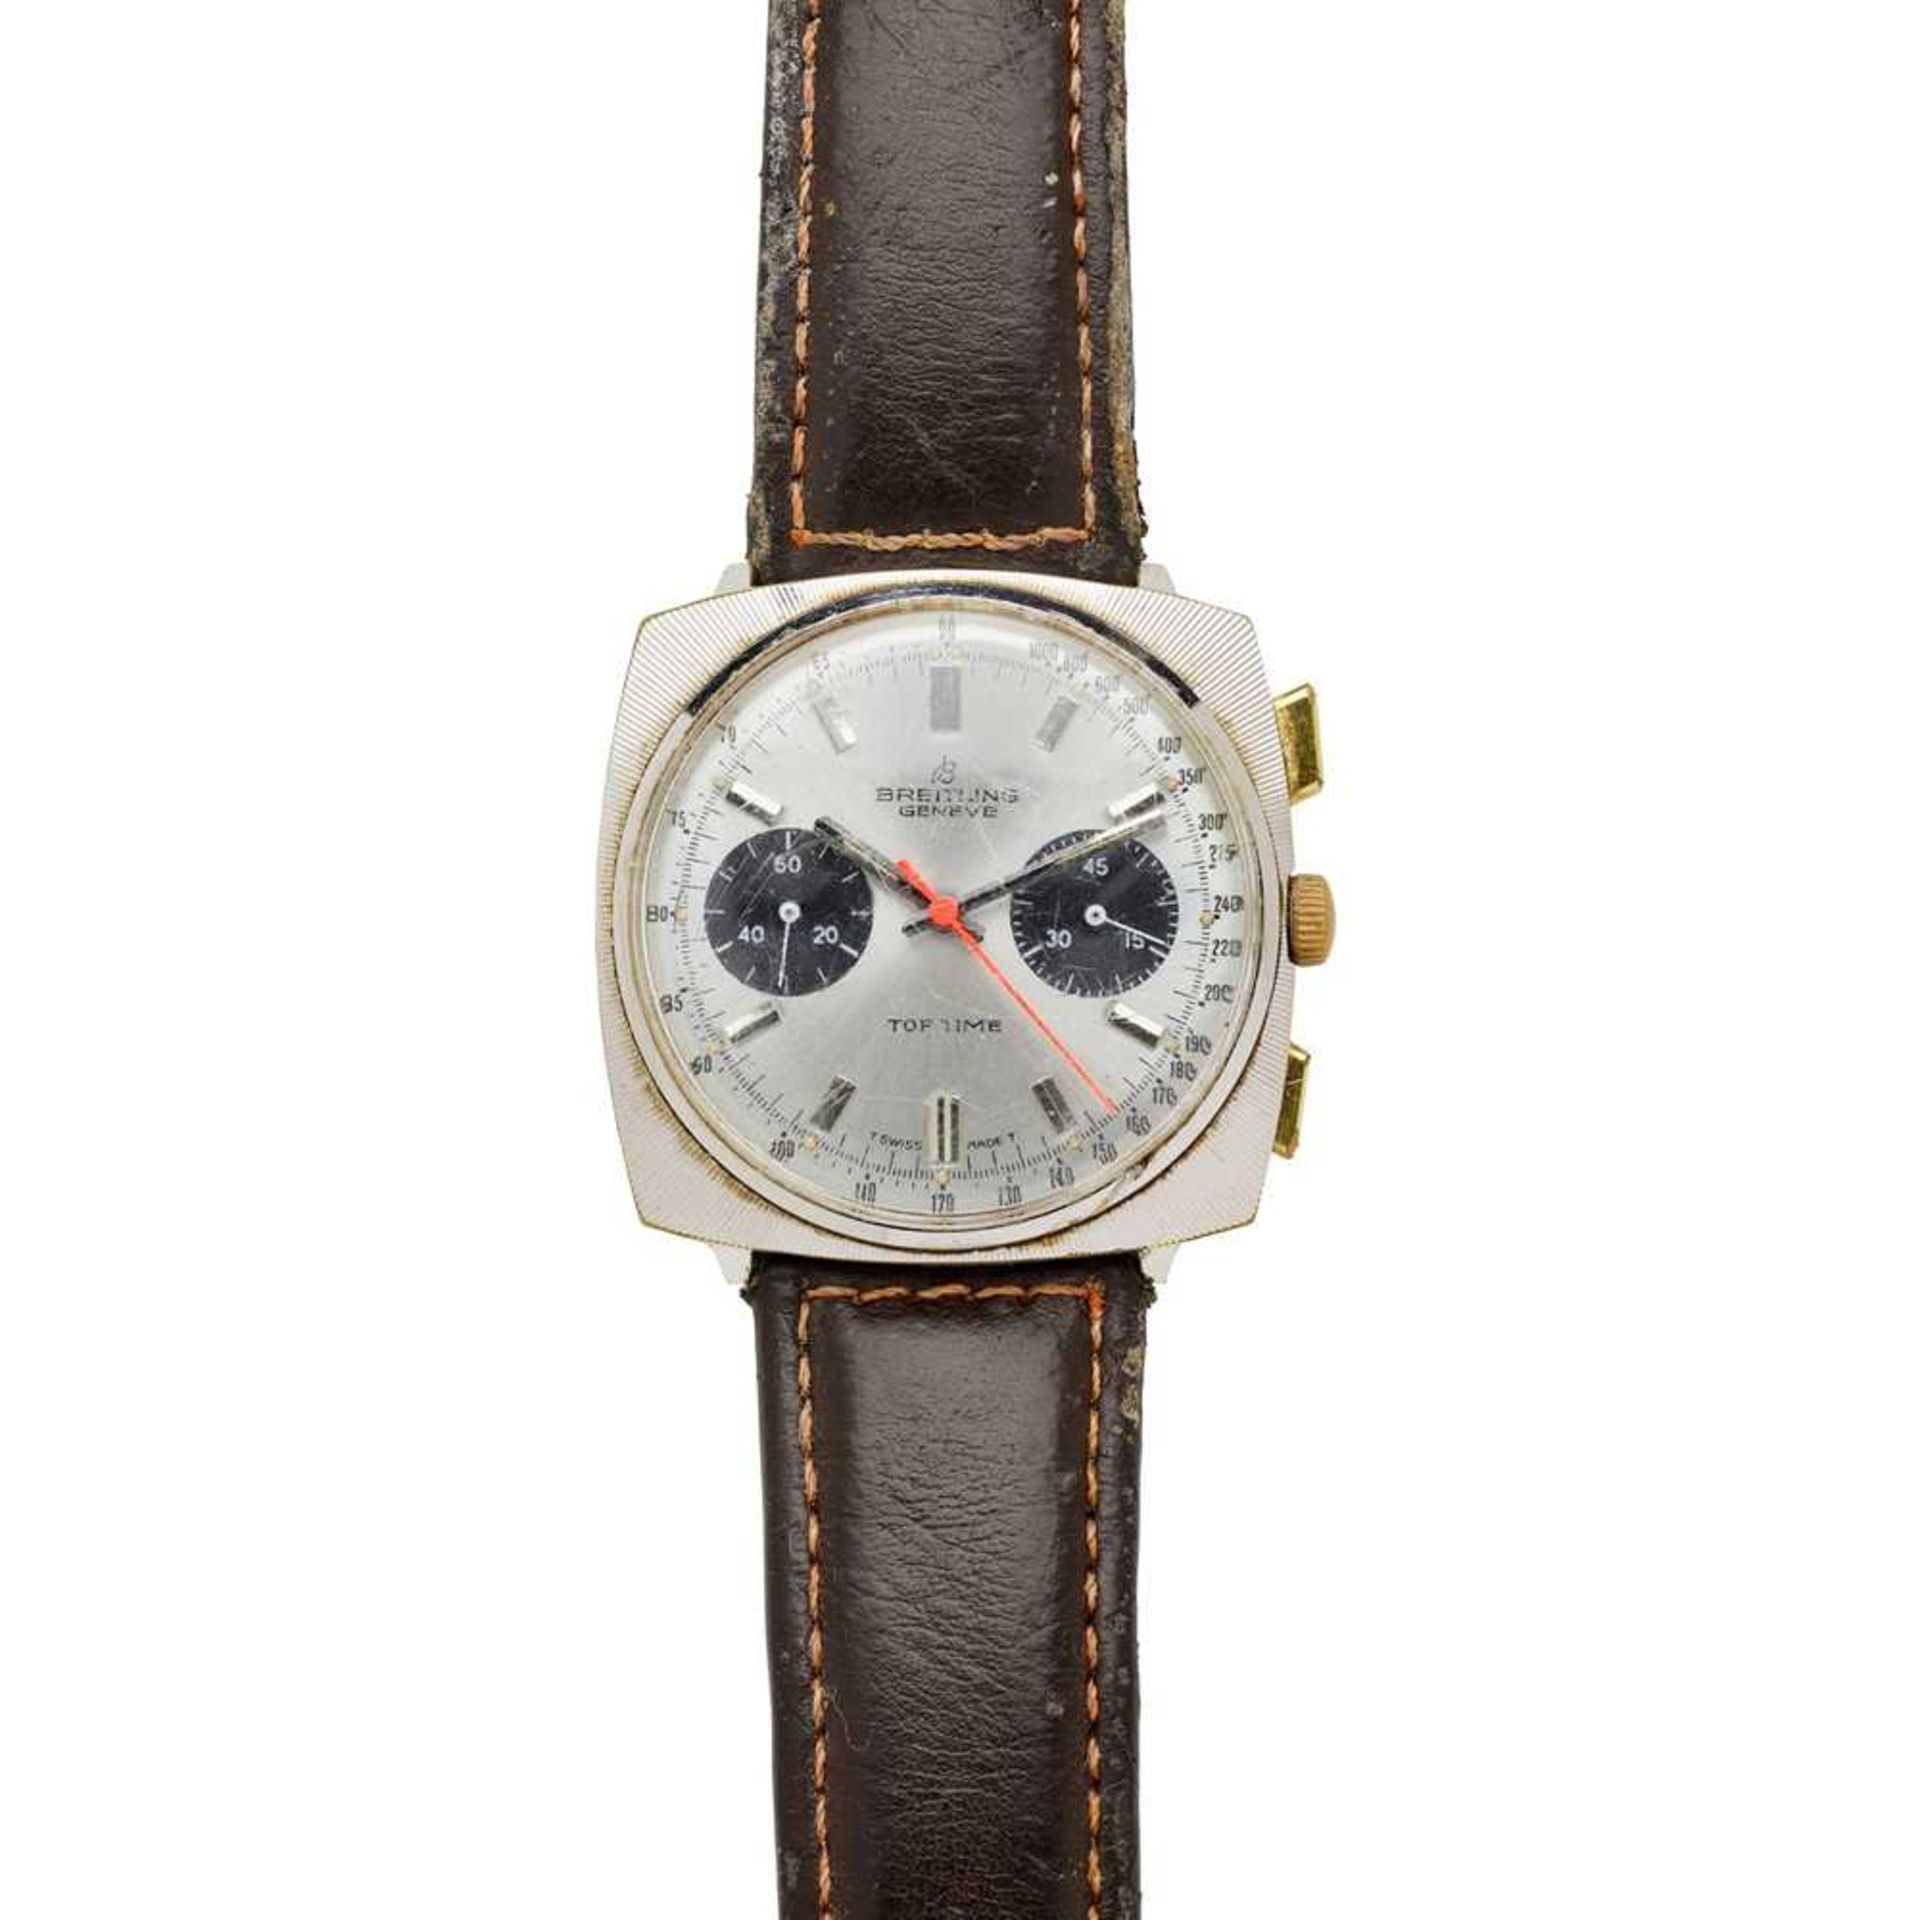 Breitling: a 1960s wrist watch